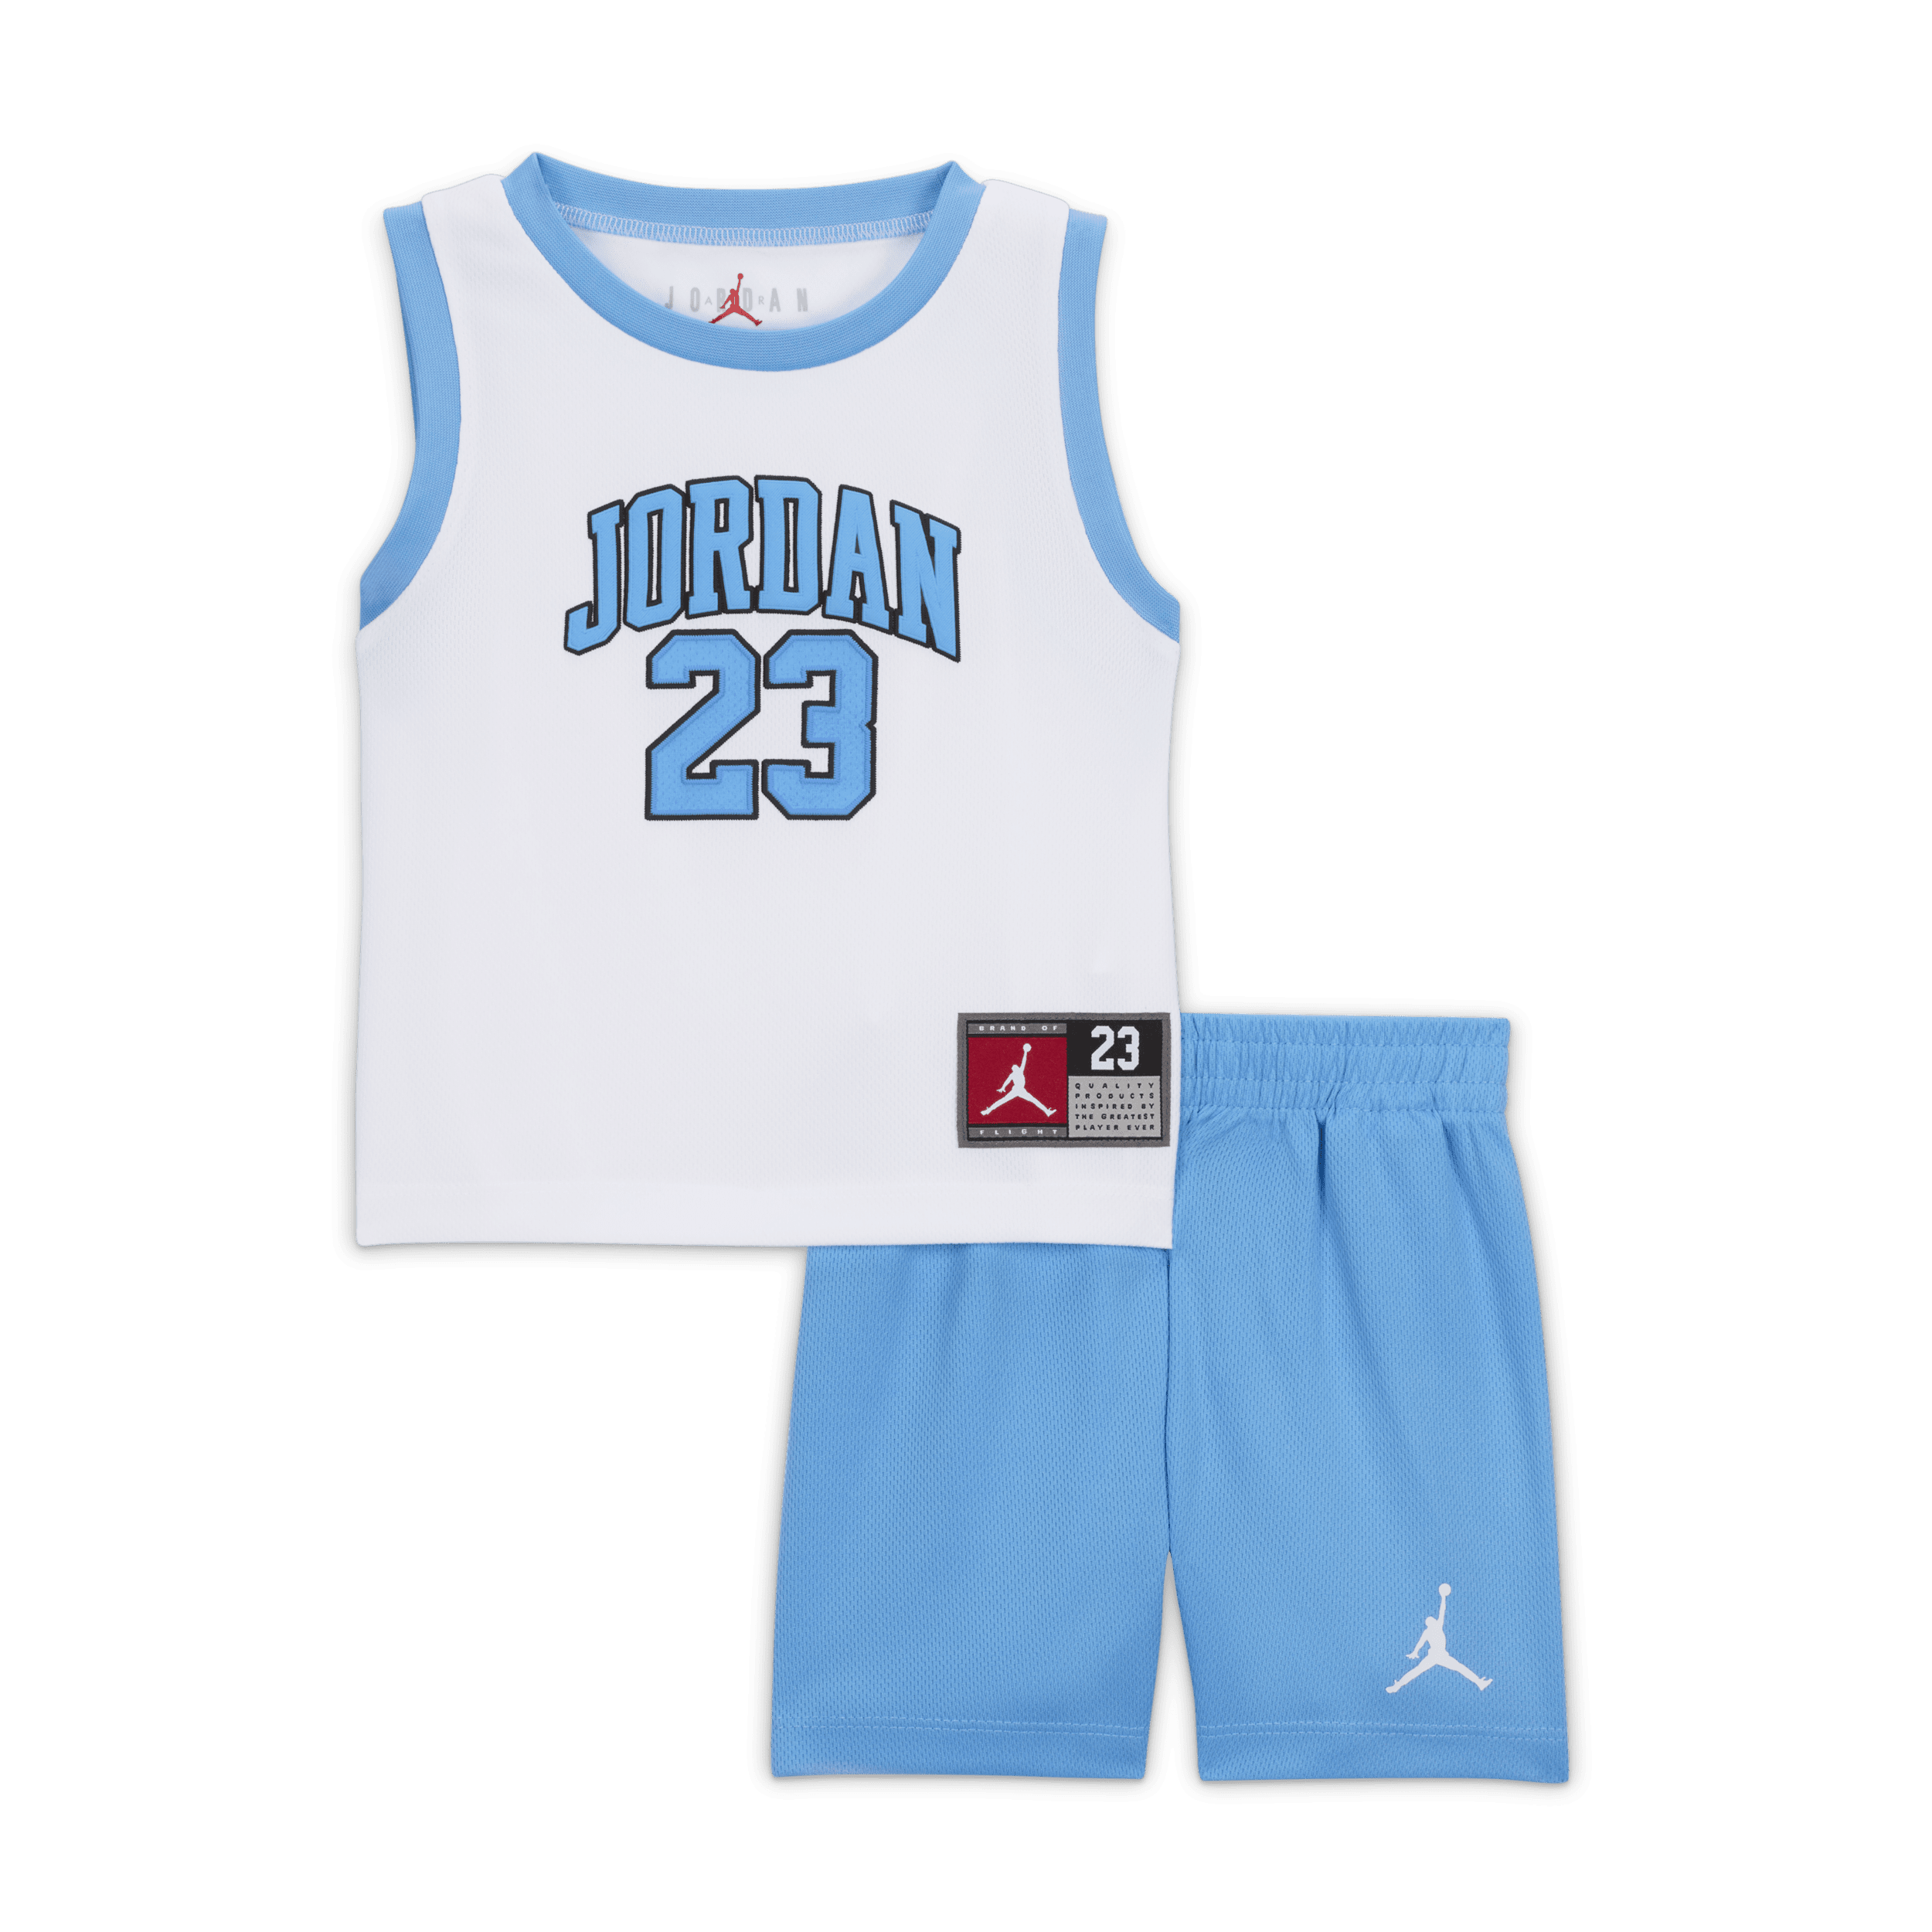 Jordan 23 Jersey Conjunto de camiseta de tres piezas - Bebé (12-24 M) - Azul